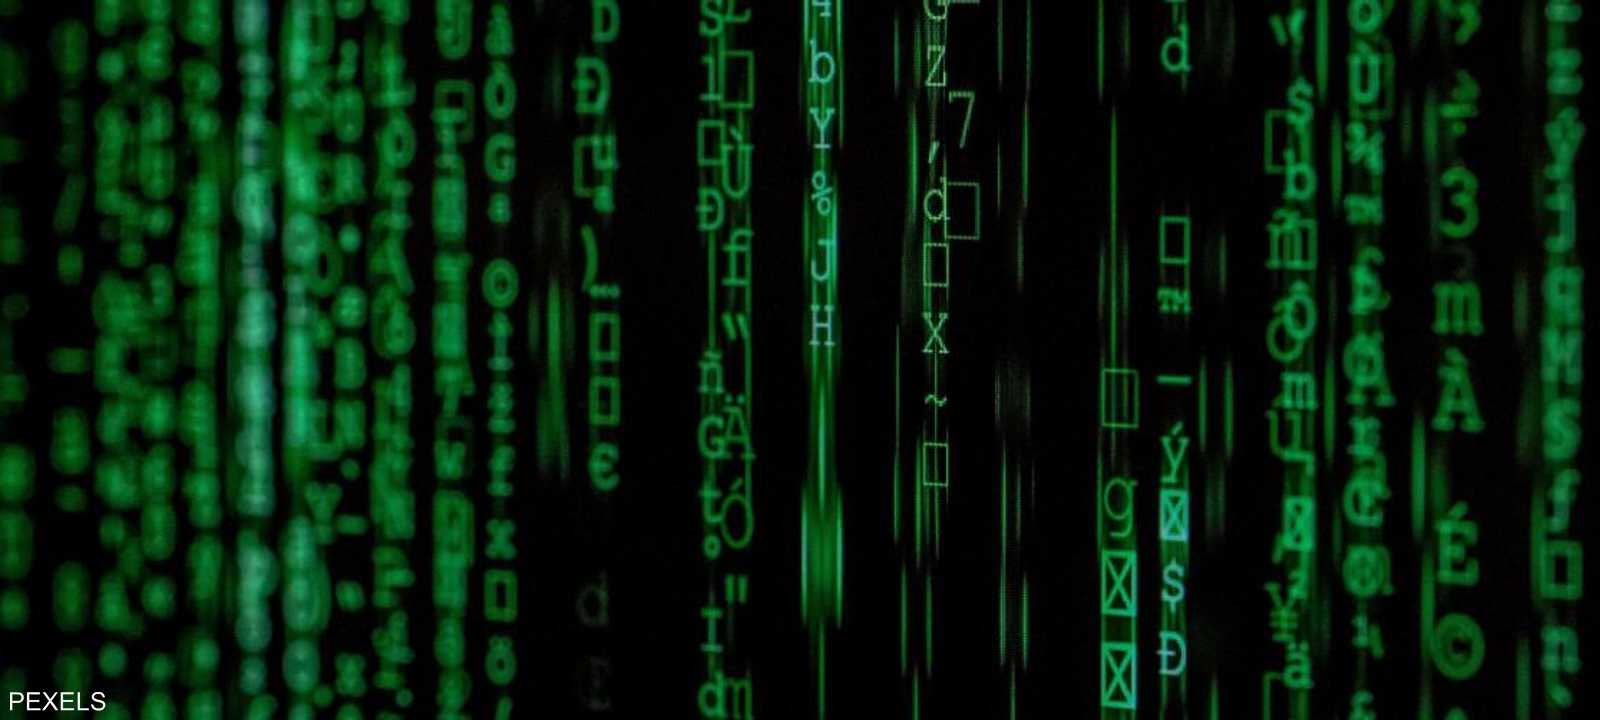 أميركا تصدر اتهامات رسمية في "عمليات قرصنة إلكترونية صينية"